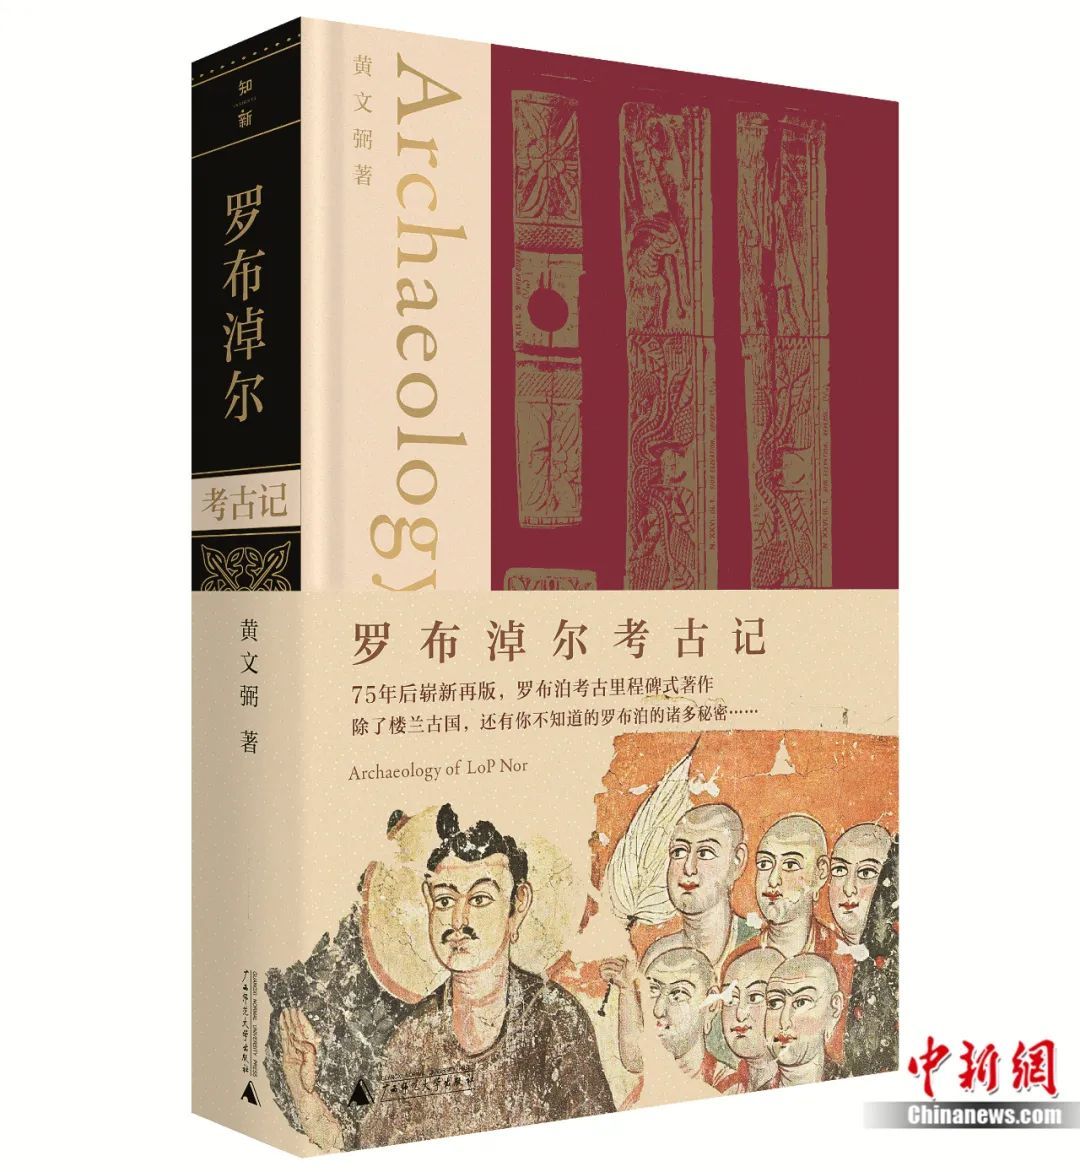 新版《罗布淖尔考古记》。广西师范大学出版社供图